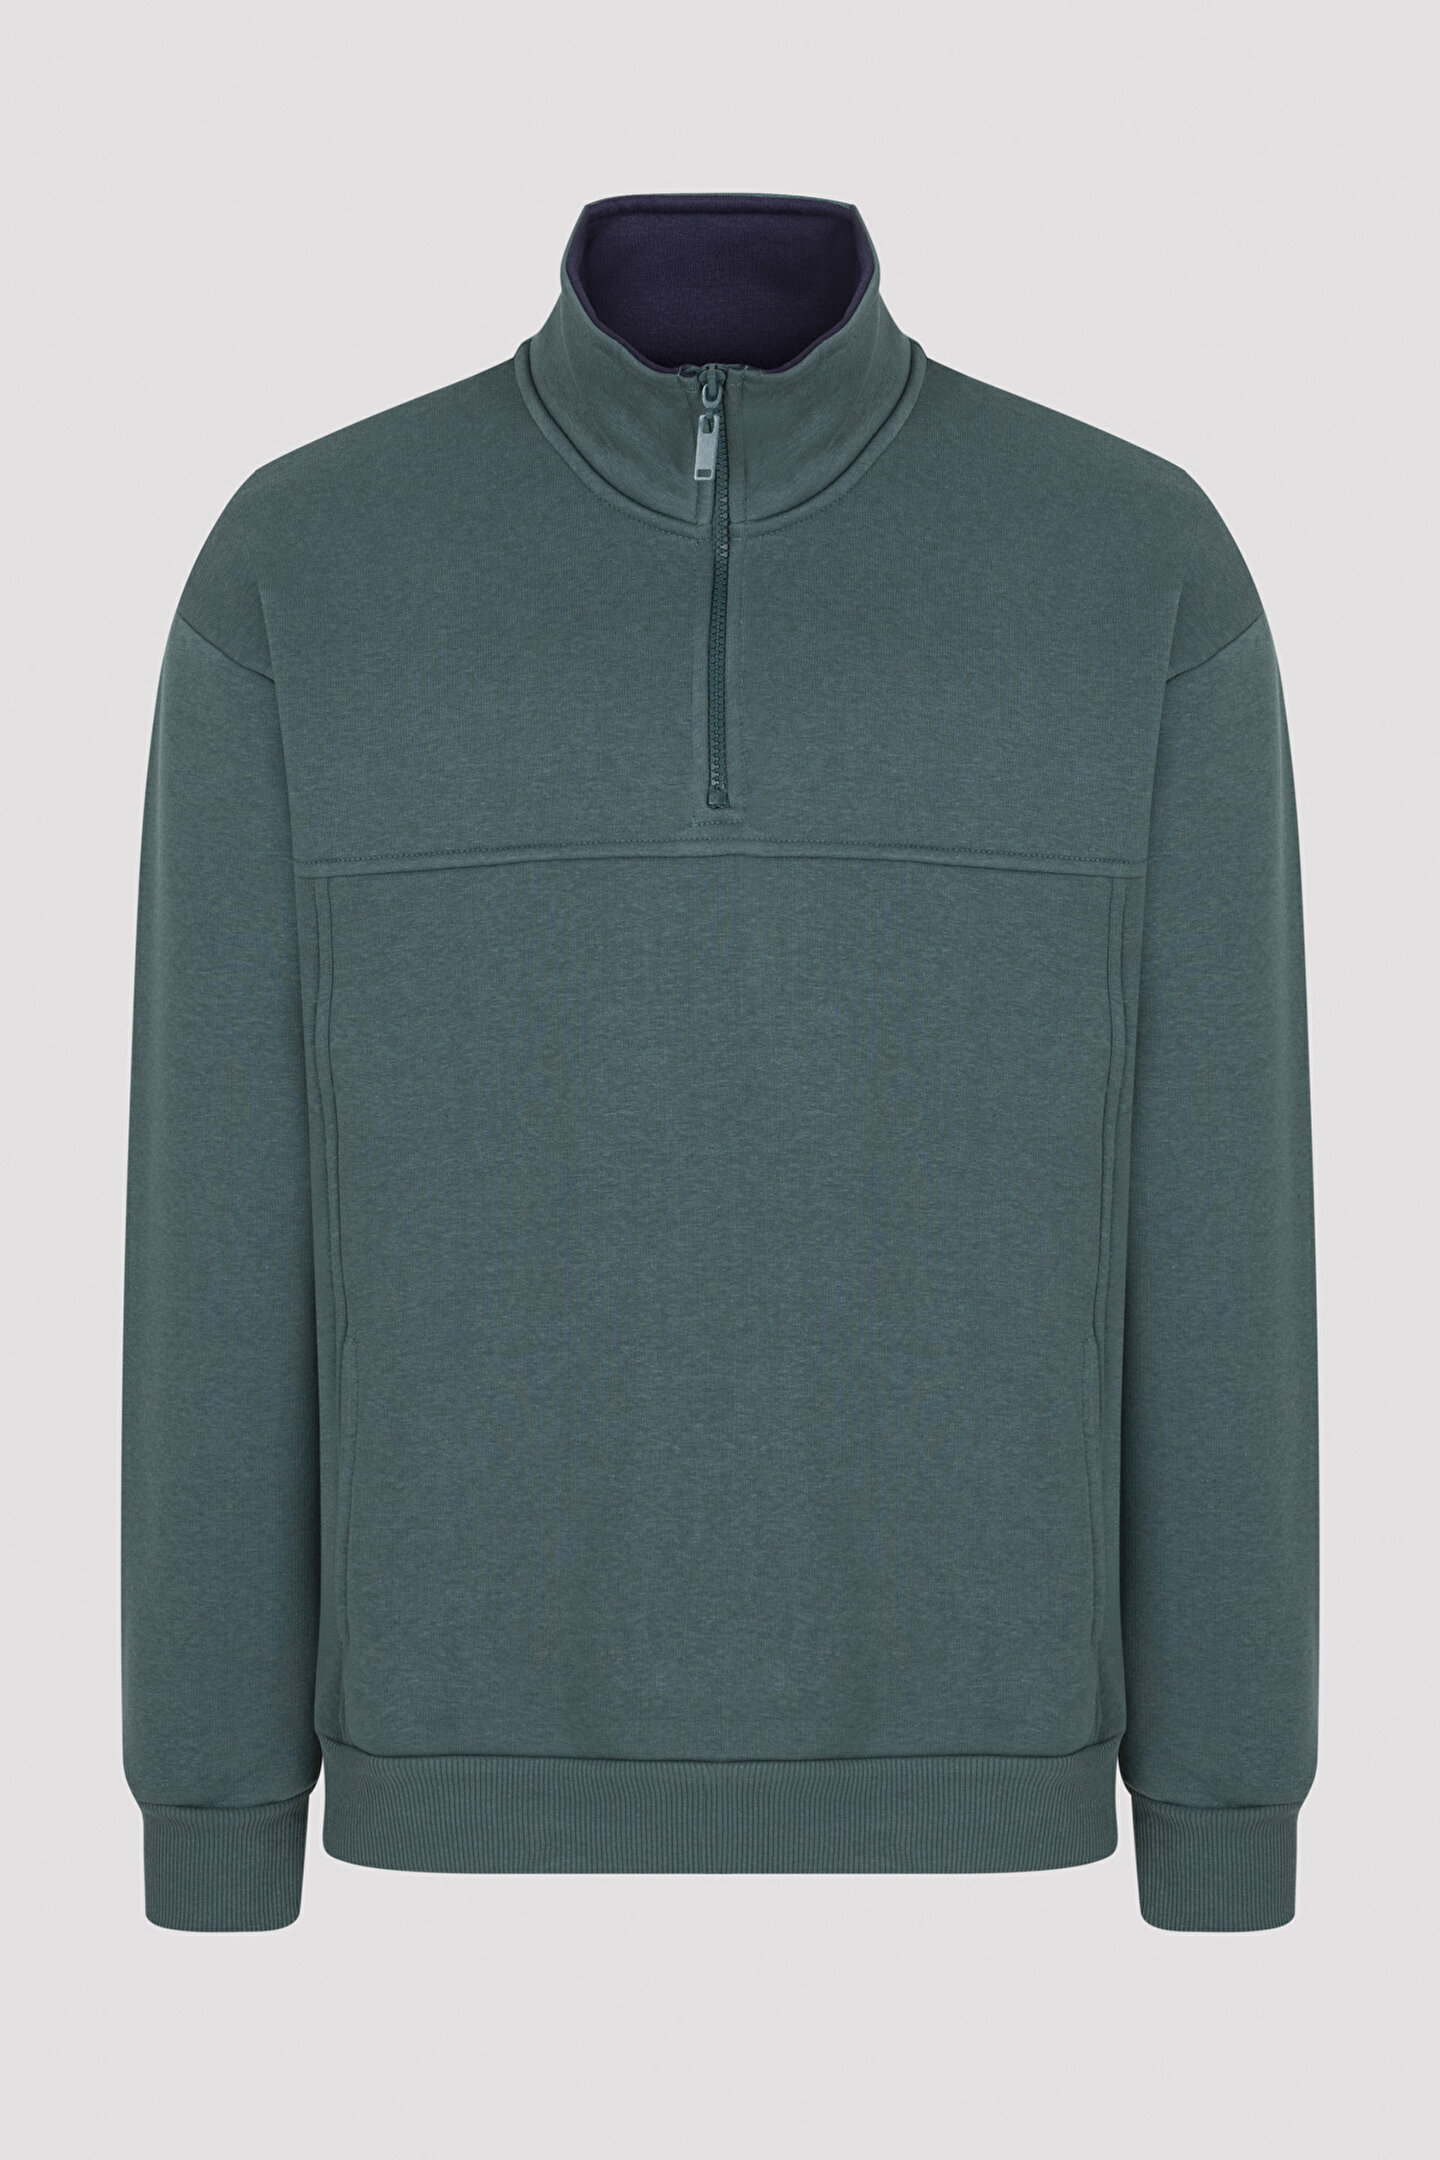 Green Zipper Sweatshirt - 1